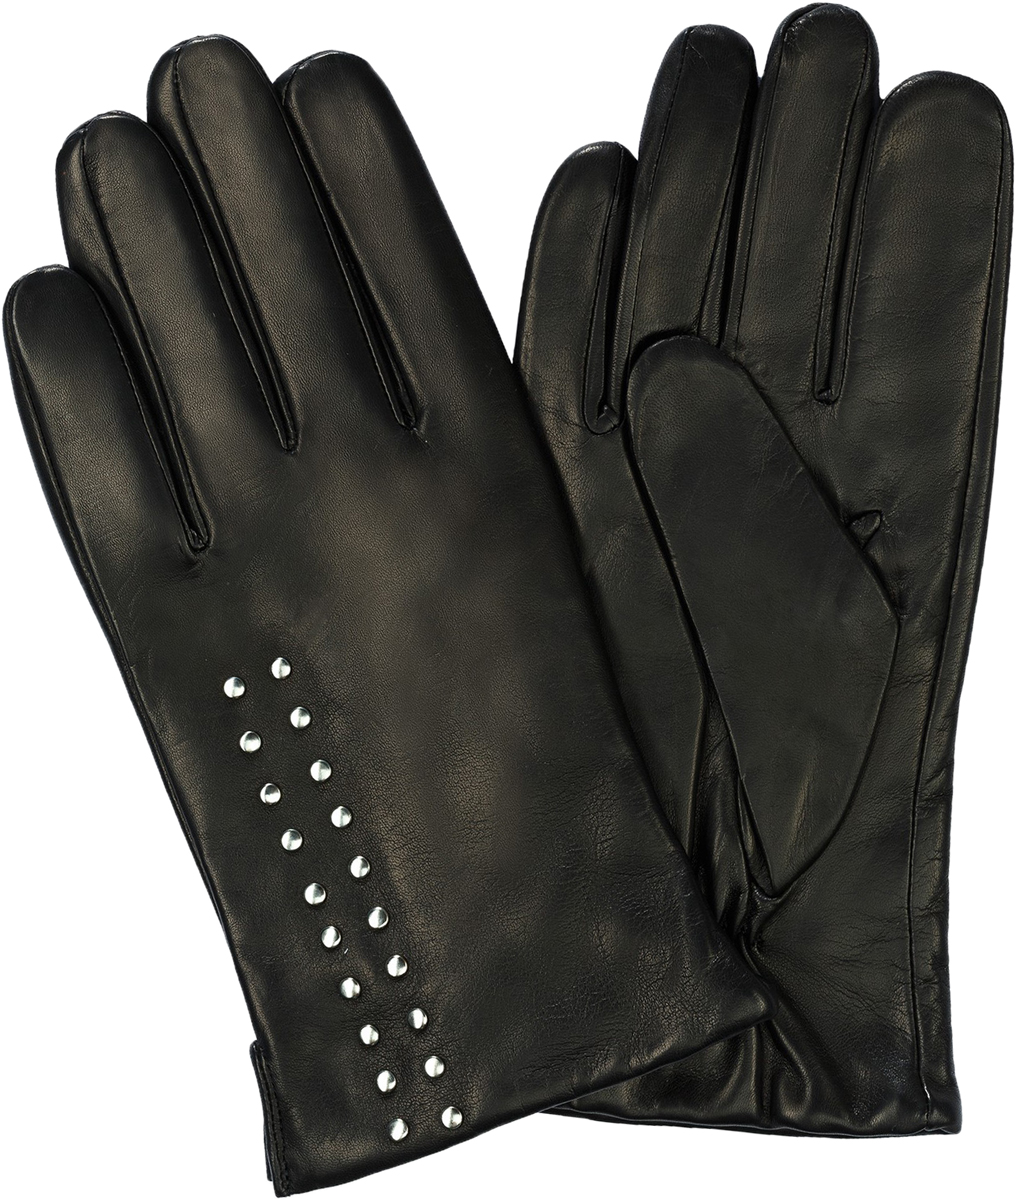 Перчатки мужские Michel Katana, цвет: черный. K11-BOUVELL/BL. Размер 9,5